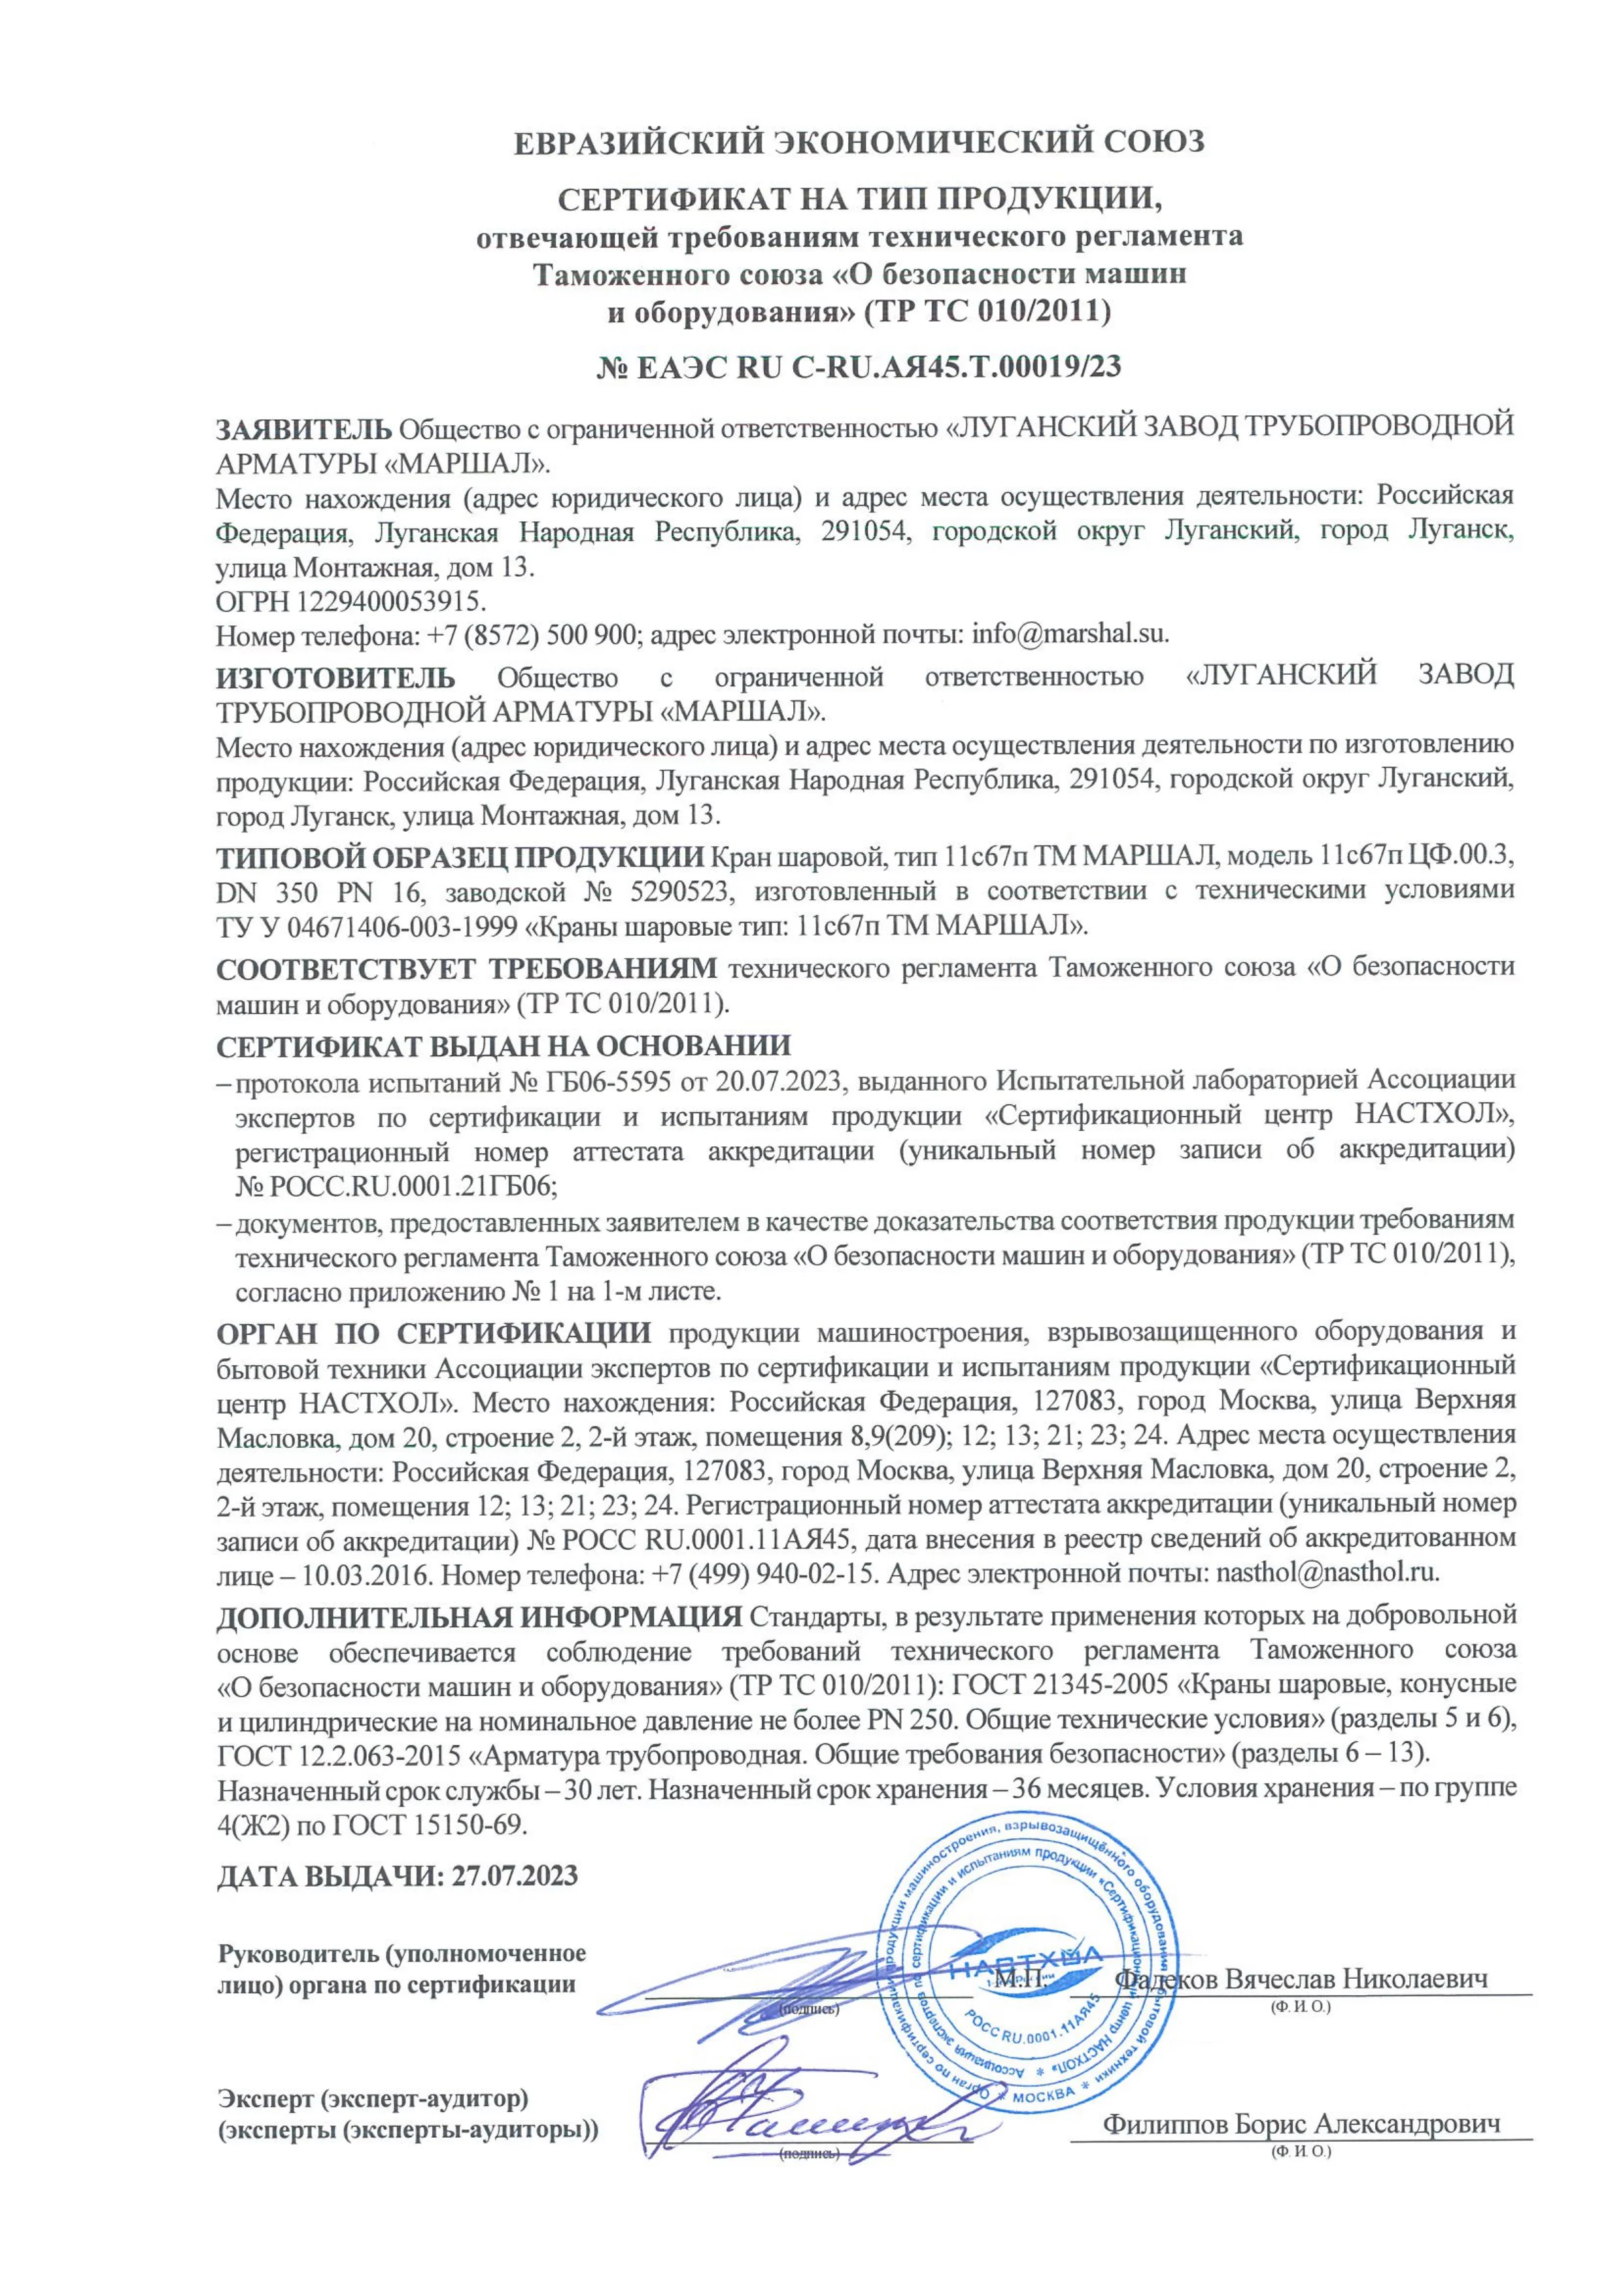 Сертификат соответствия ТР ТС 010/2011 Краны шаровые тип 11с67п